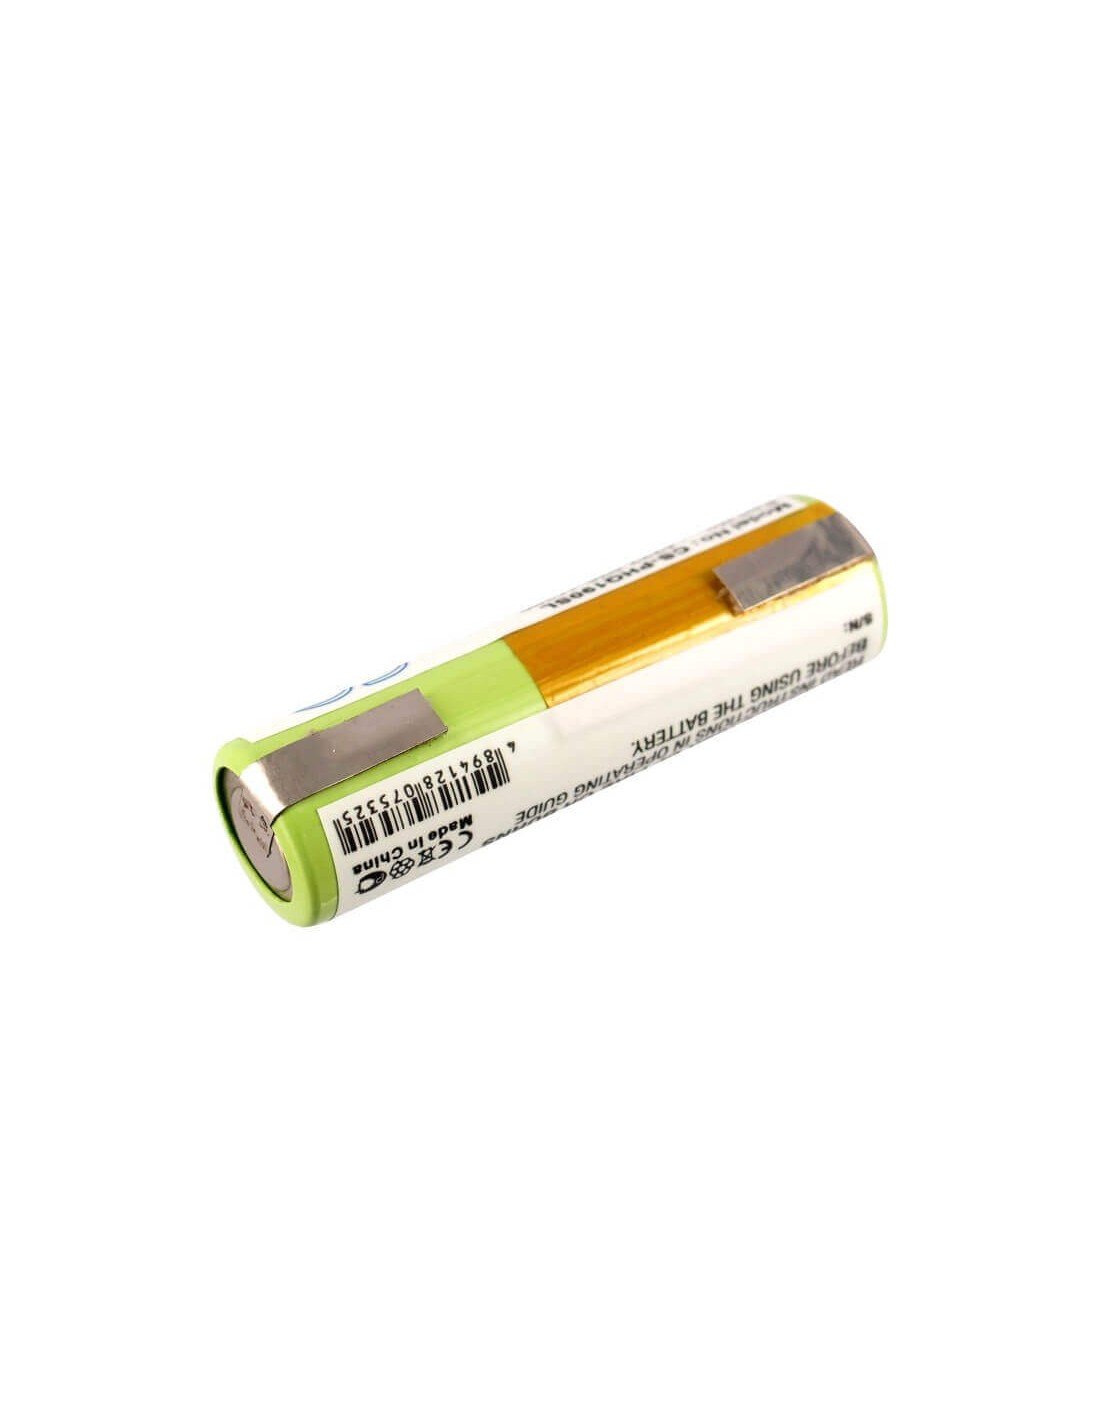 Battery for Arcitec Rq1060, Pt920/21, Rq1090 3.7V, 750mAh - 2.78Wh